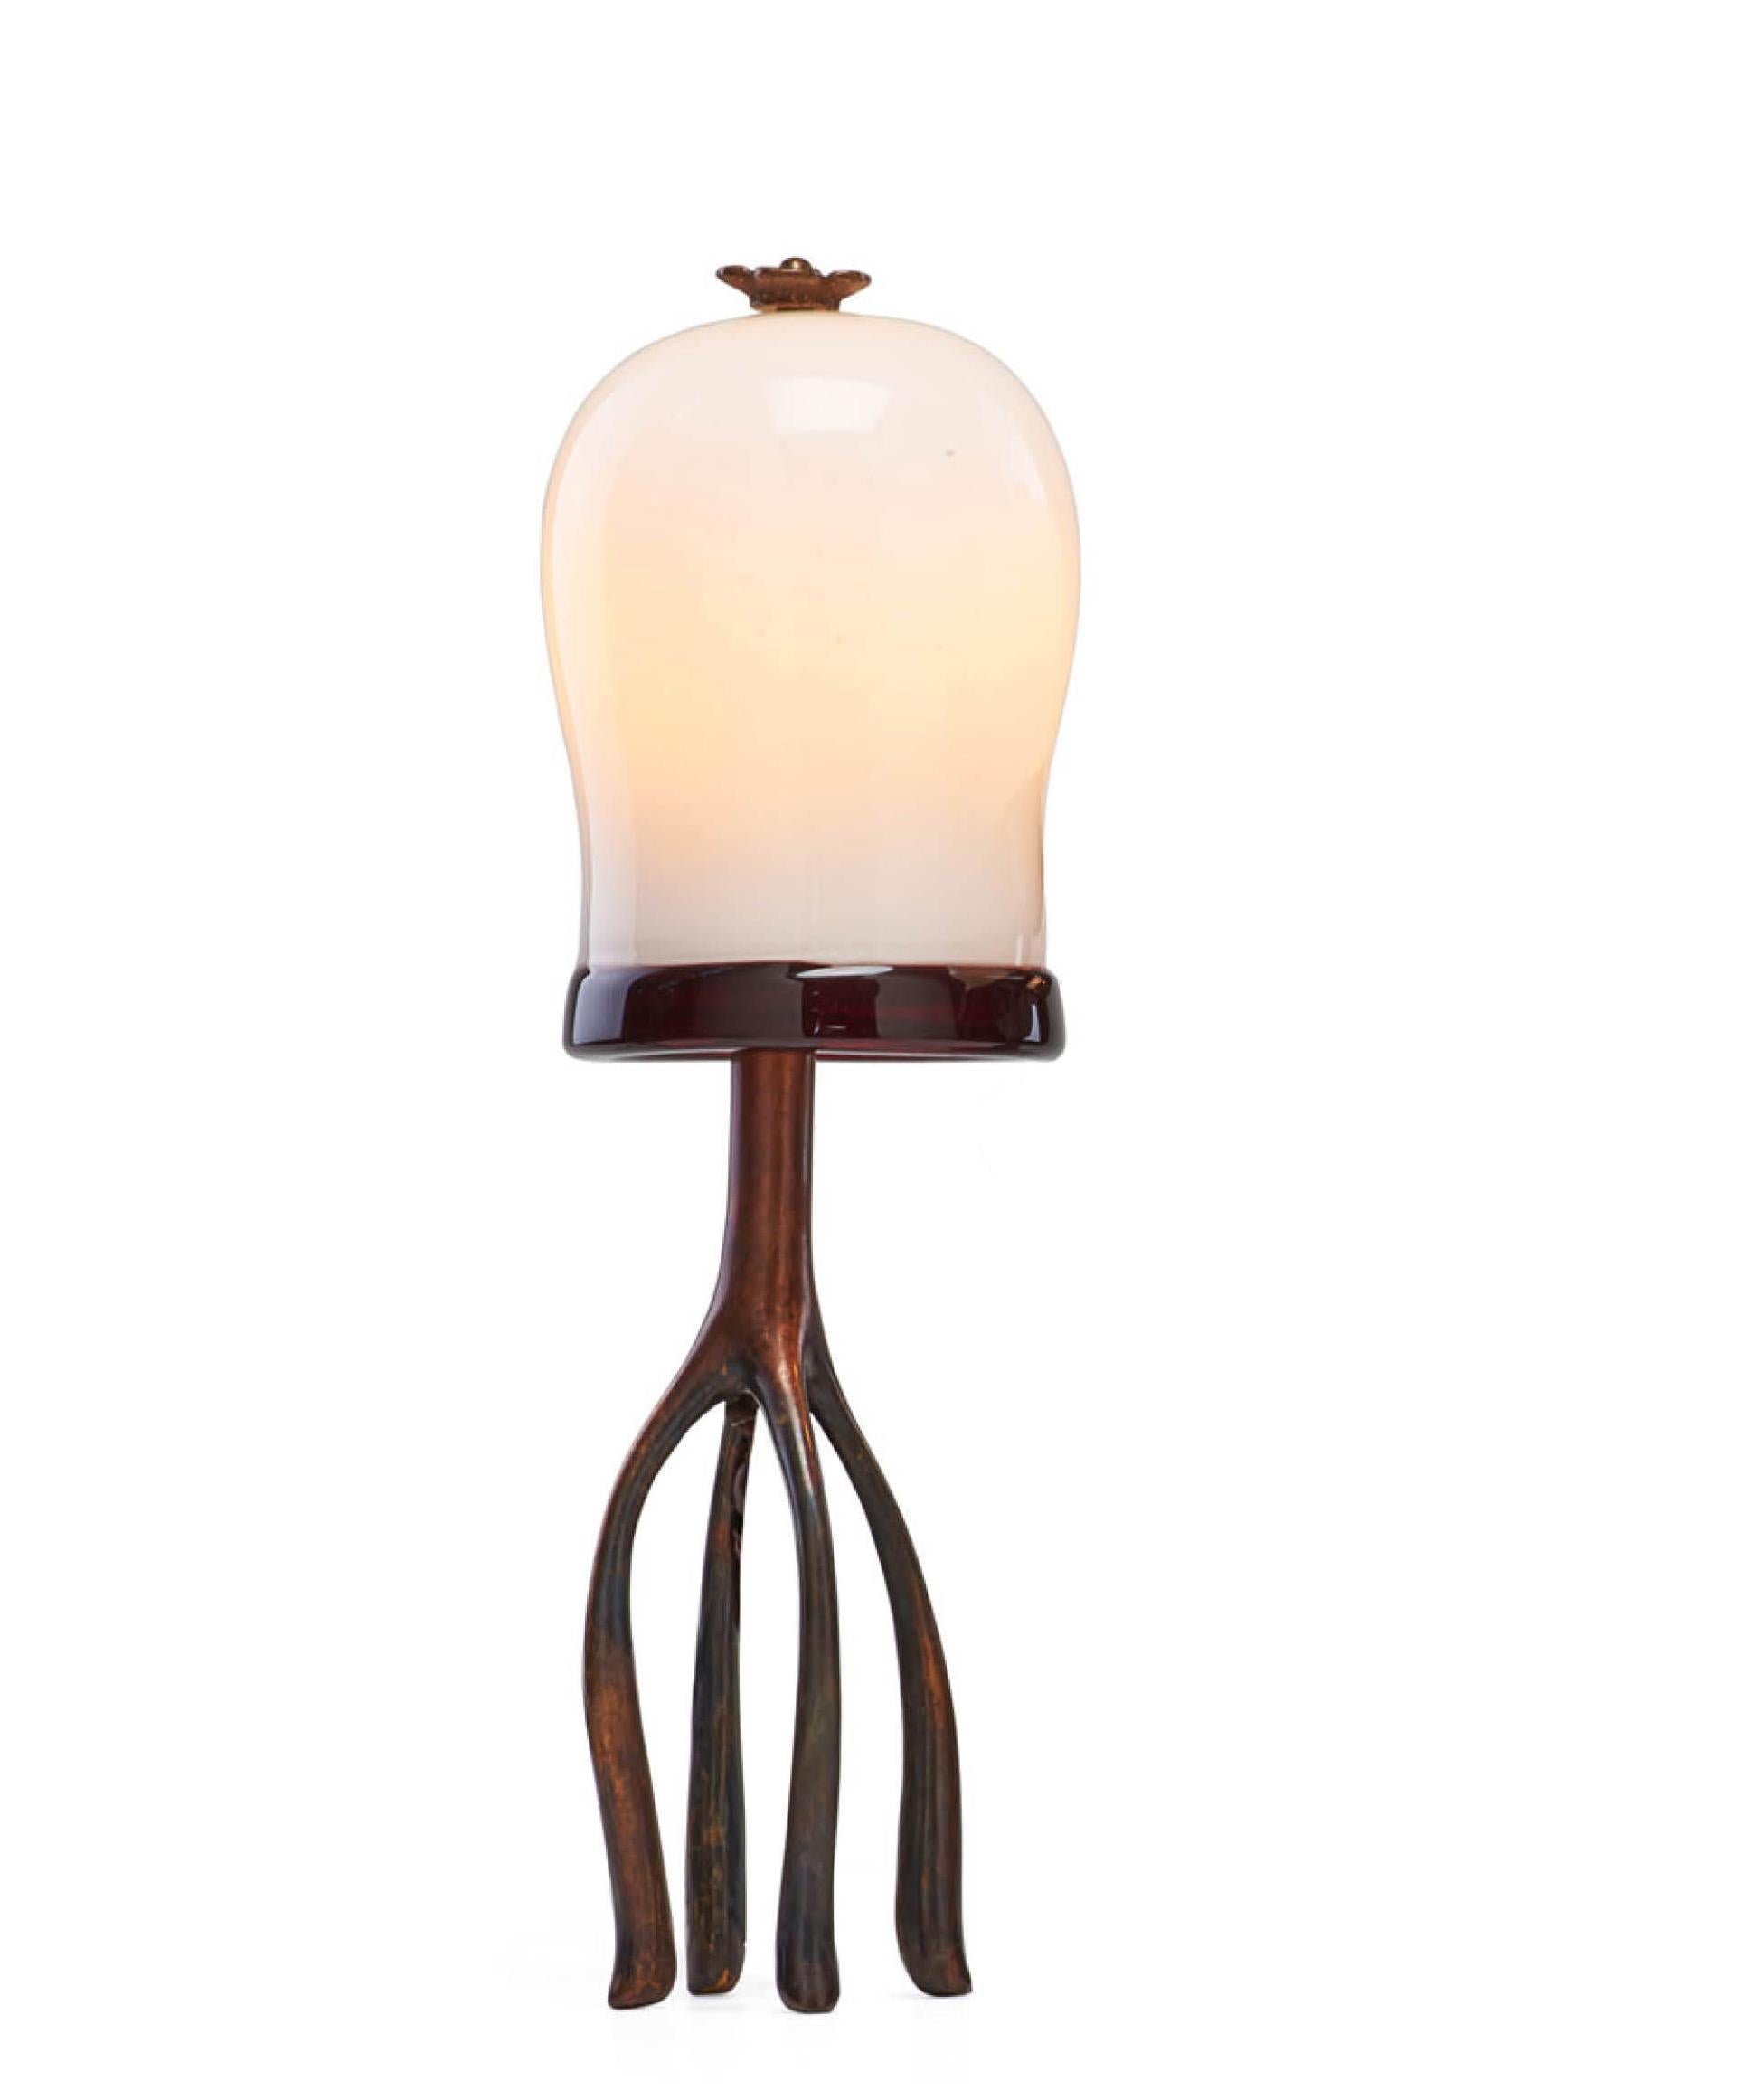 American Pair H57 Boudoir Table Lamp: Cast Bronze + Blown Glass, Jordan Mozer, USA 2007 For Sale